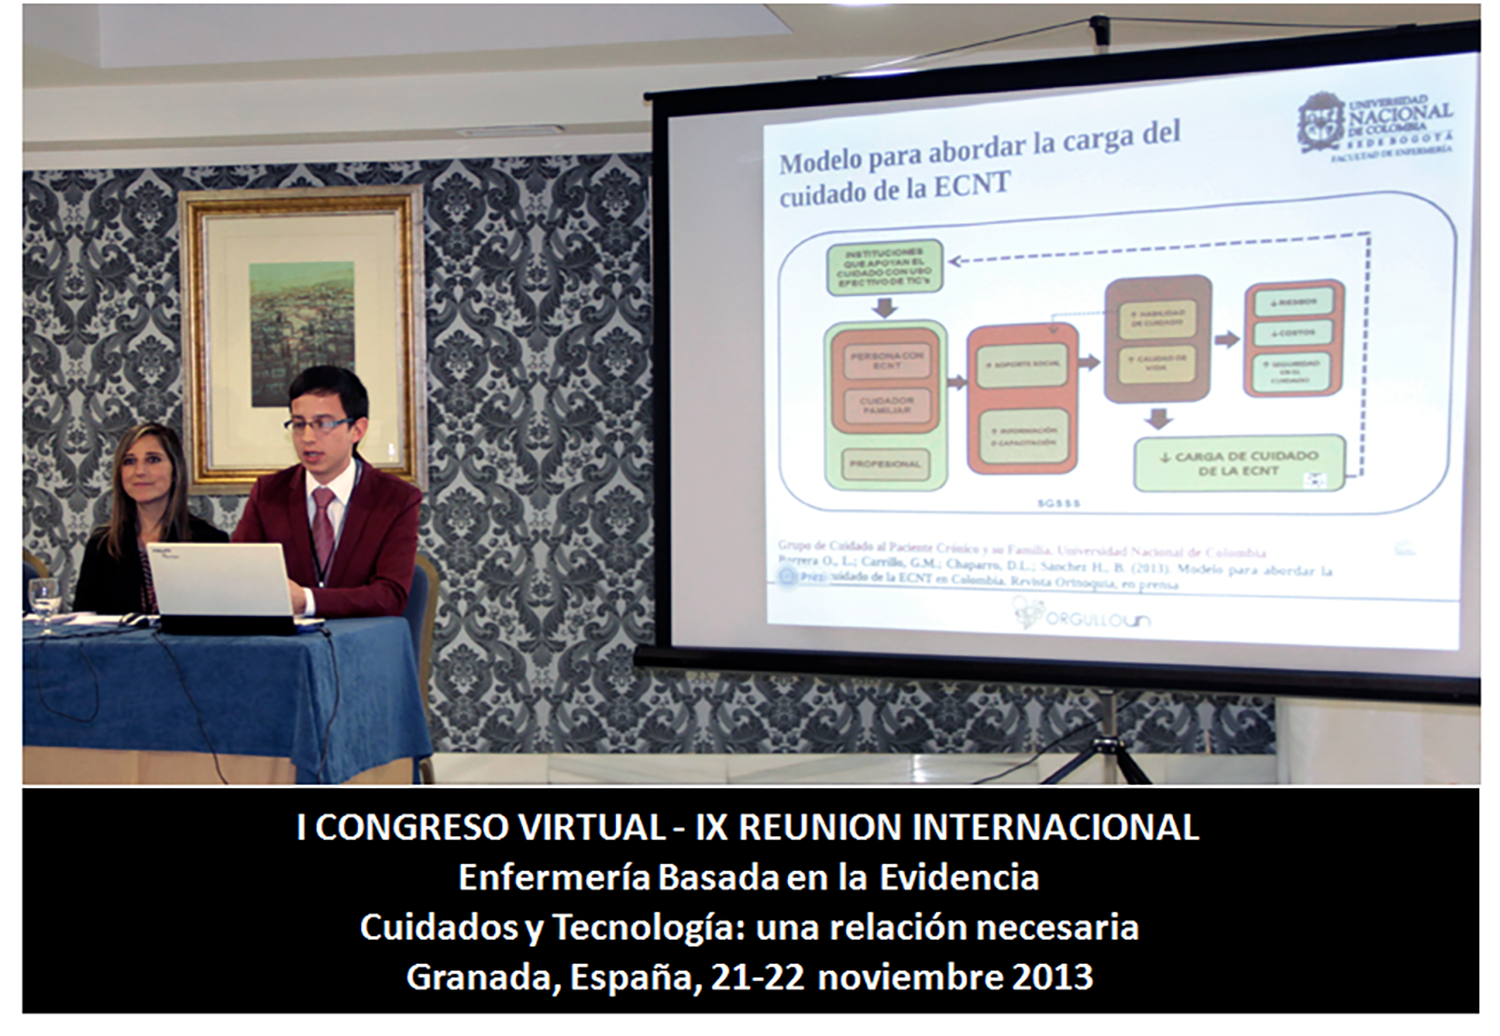 Participación en el I CONGRESO VIRTUAL - IX REUNIÓN INTERNACIONAL Enfermería Basada en la evidencia Cuidados y tecnología 2014